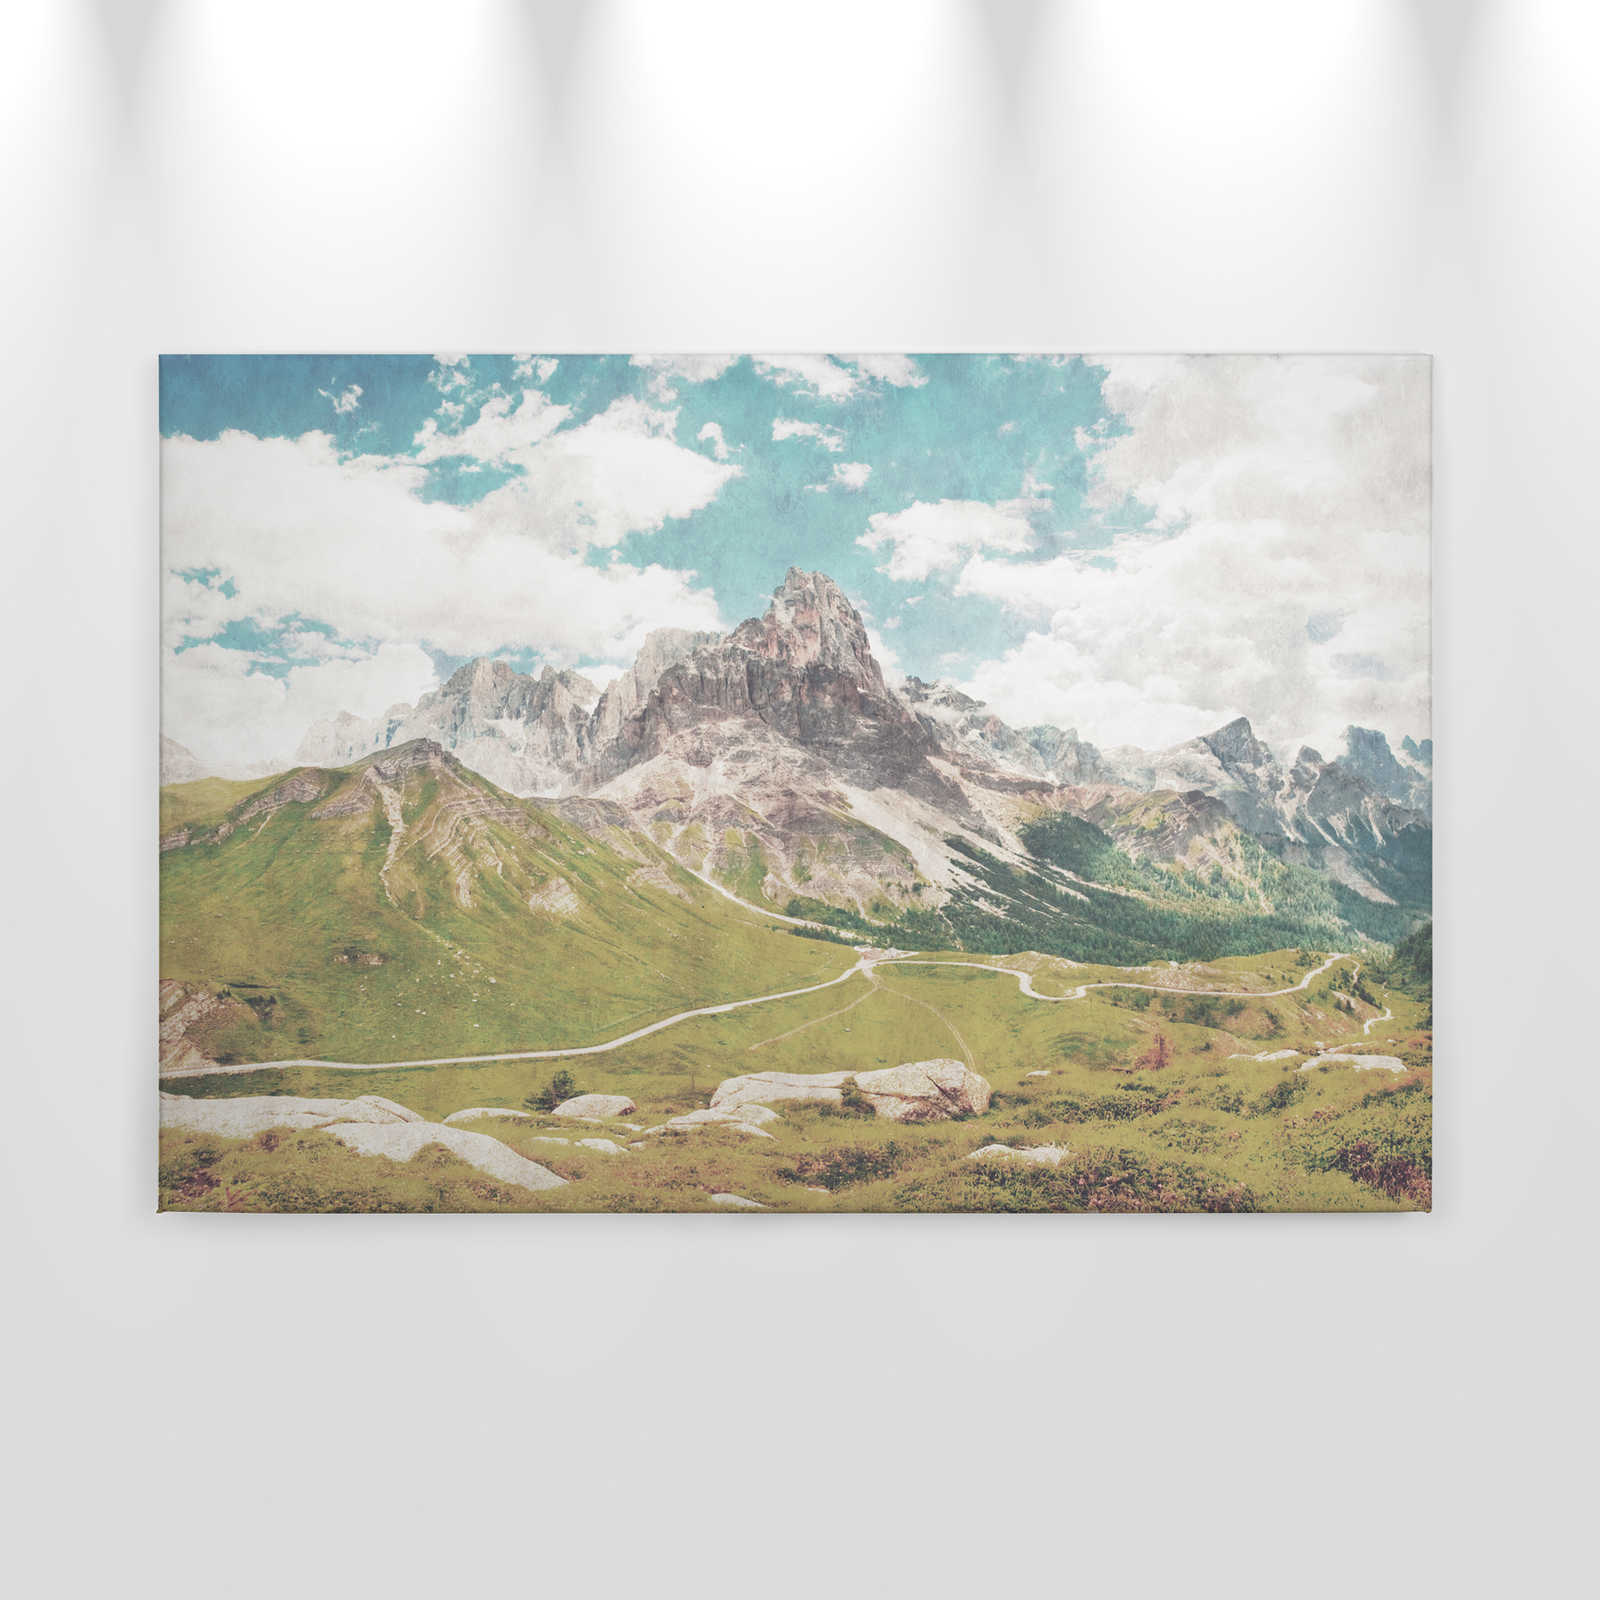             Dolomiti 2 - Pintura en lienzo Fotografía retro Dolomitas en estructura de papel secante - 0,90 m x 0,60 m
        